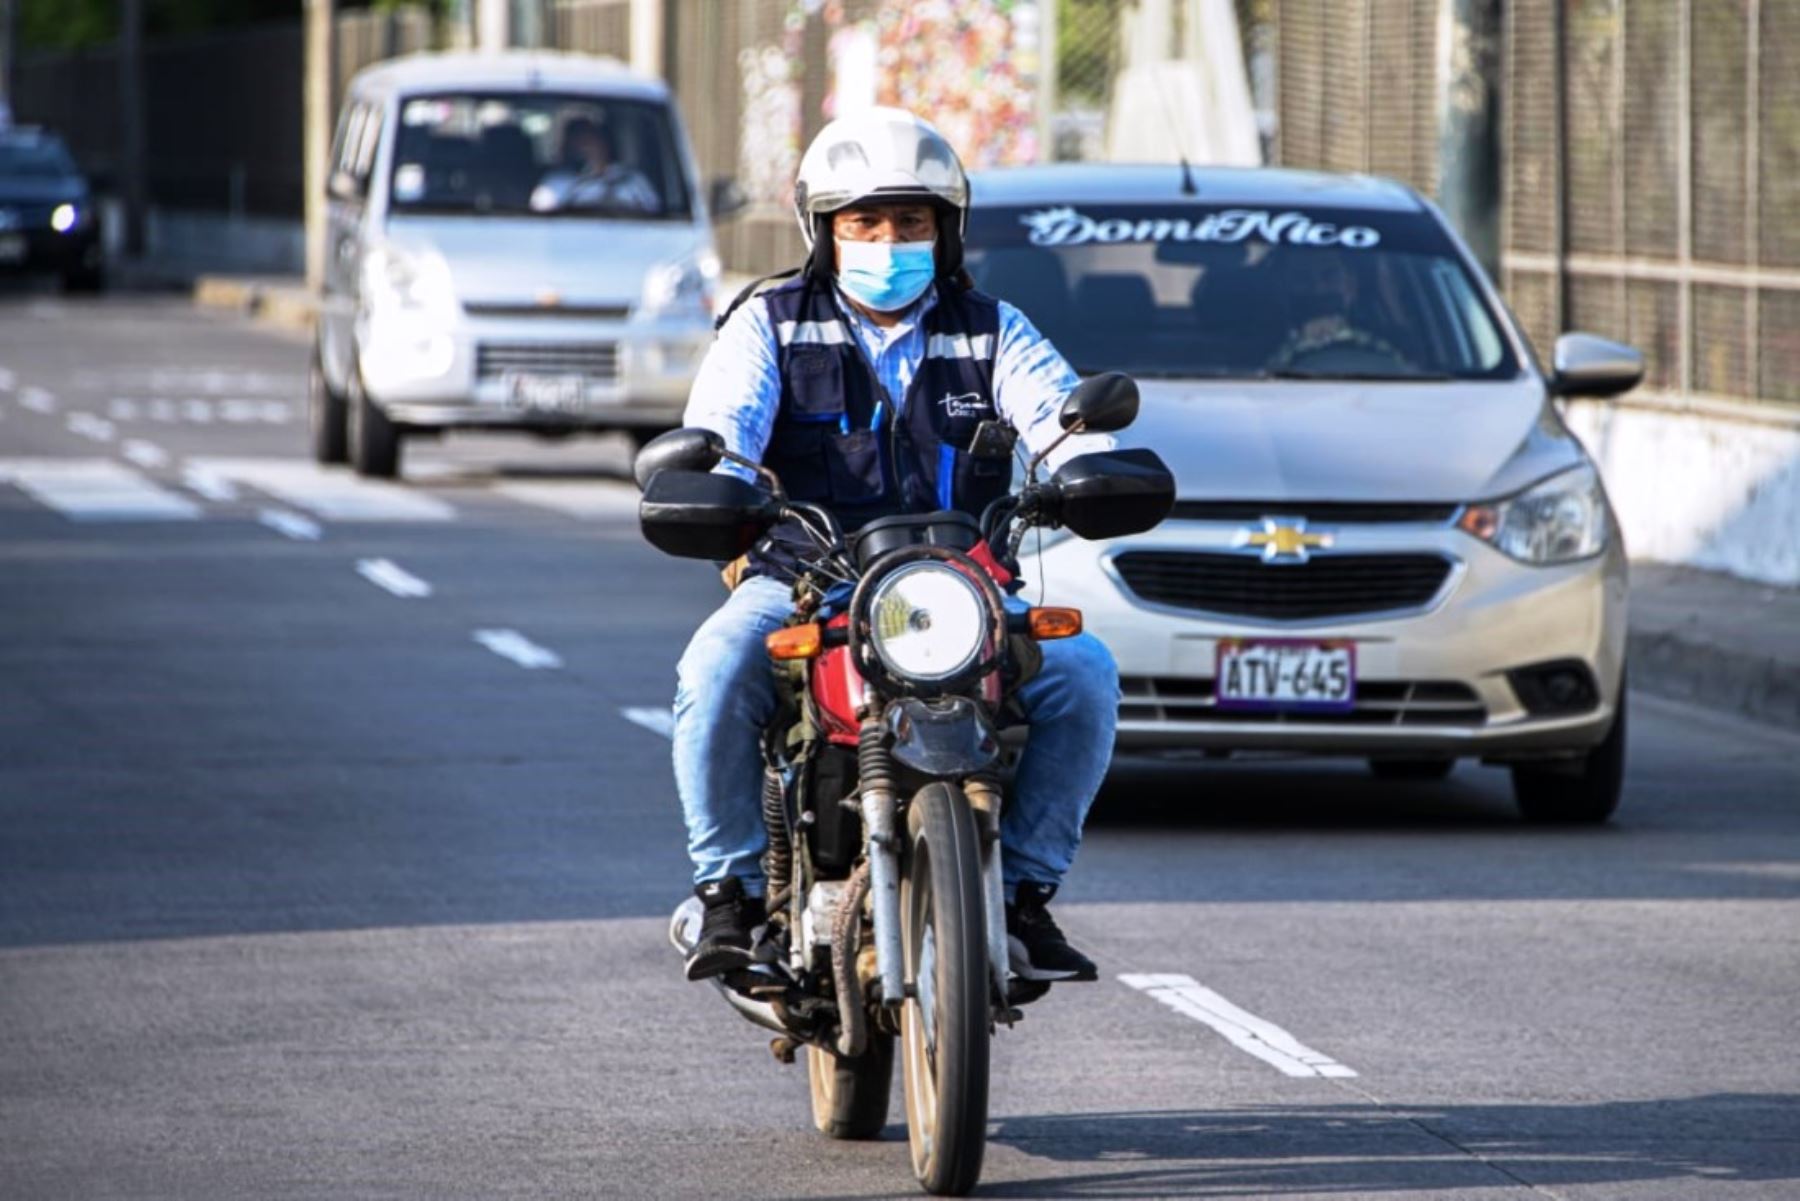 Verifica si tu licencia para motos se encuentra en el Registro Nacional de Conductores. Foto: ANDINA/Difusión.